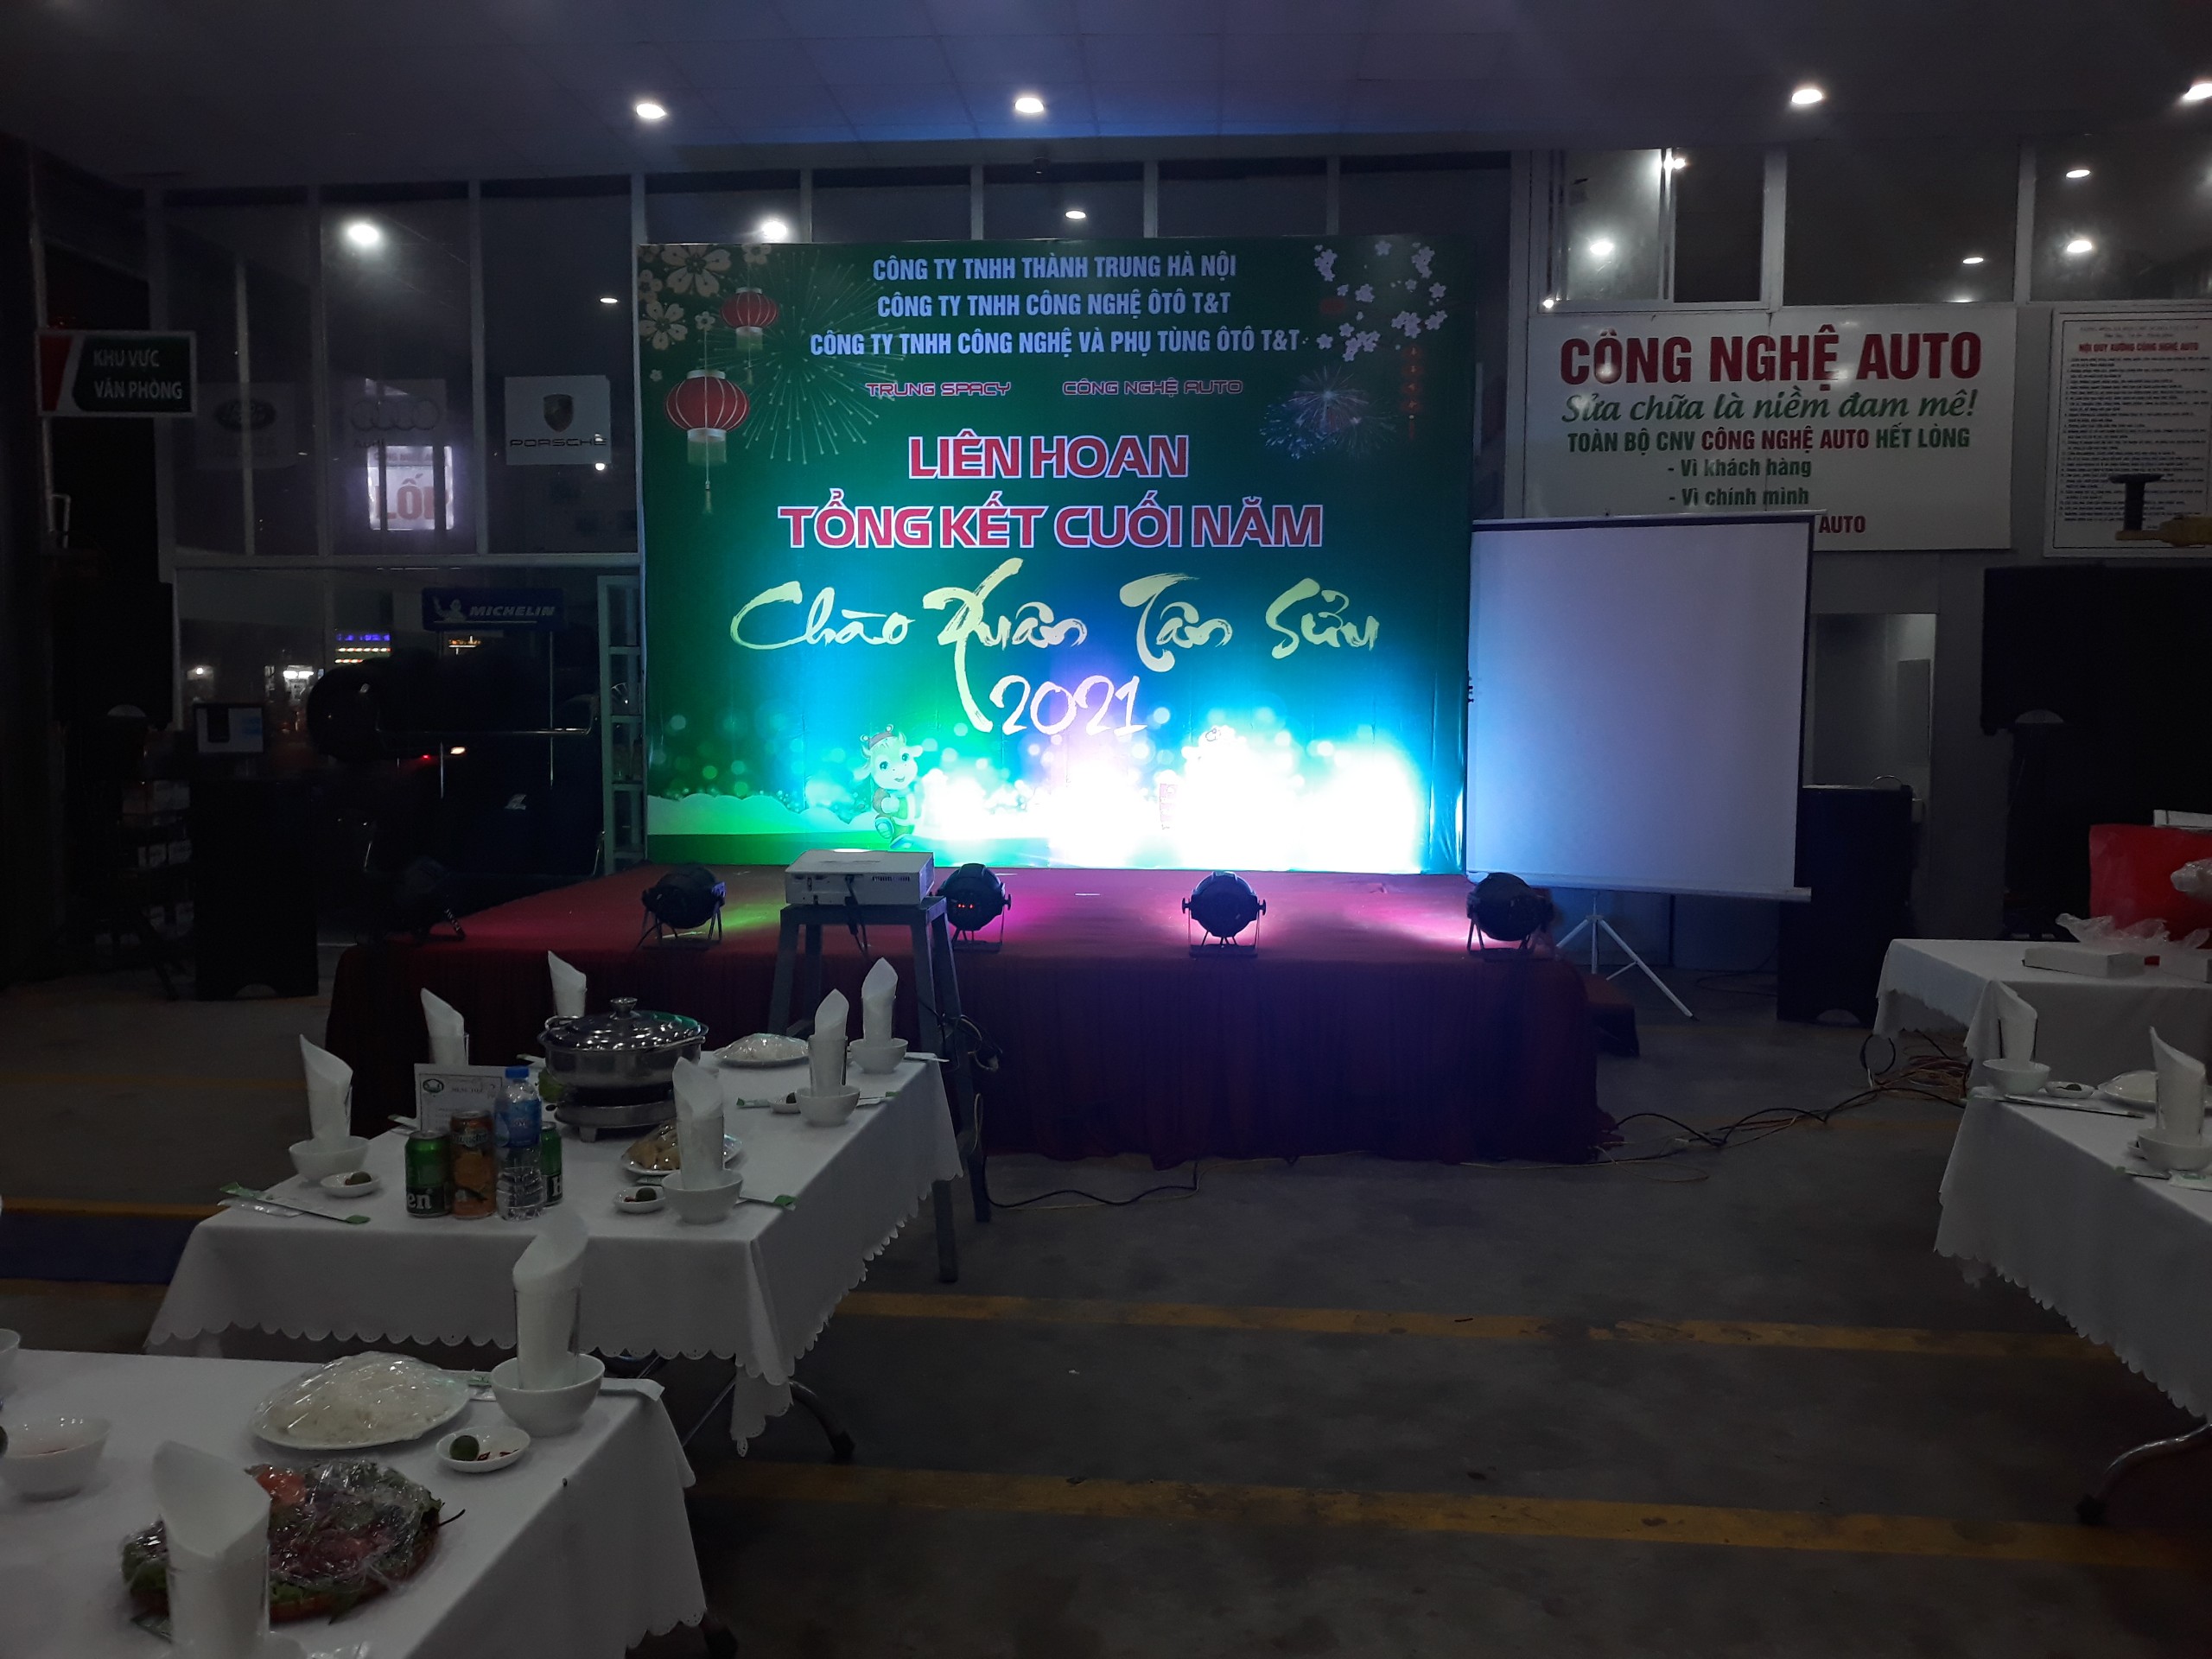 Dịch vụ cho thuê âm thanh ánh sáng tại Hà Nội